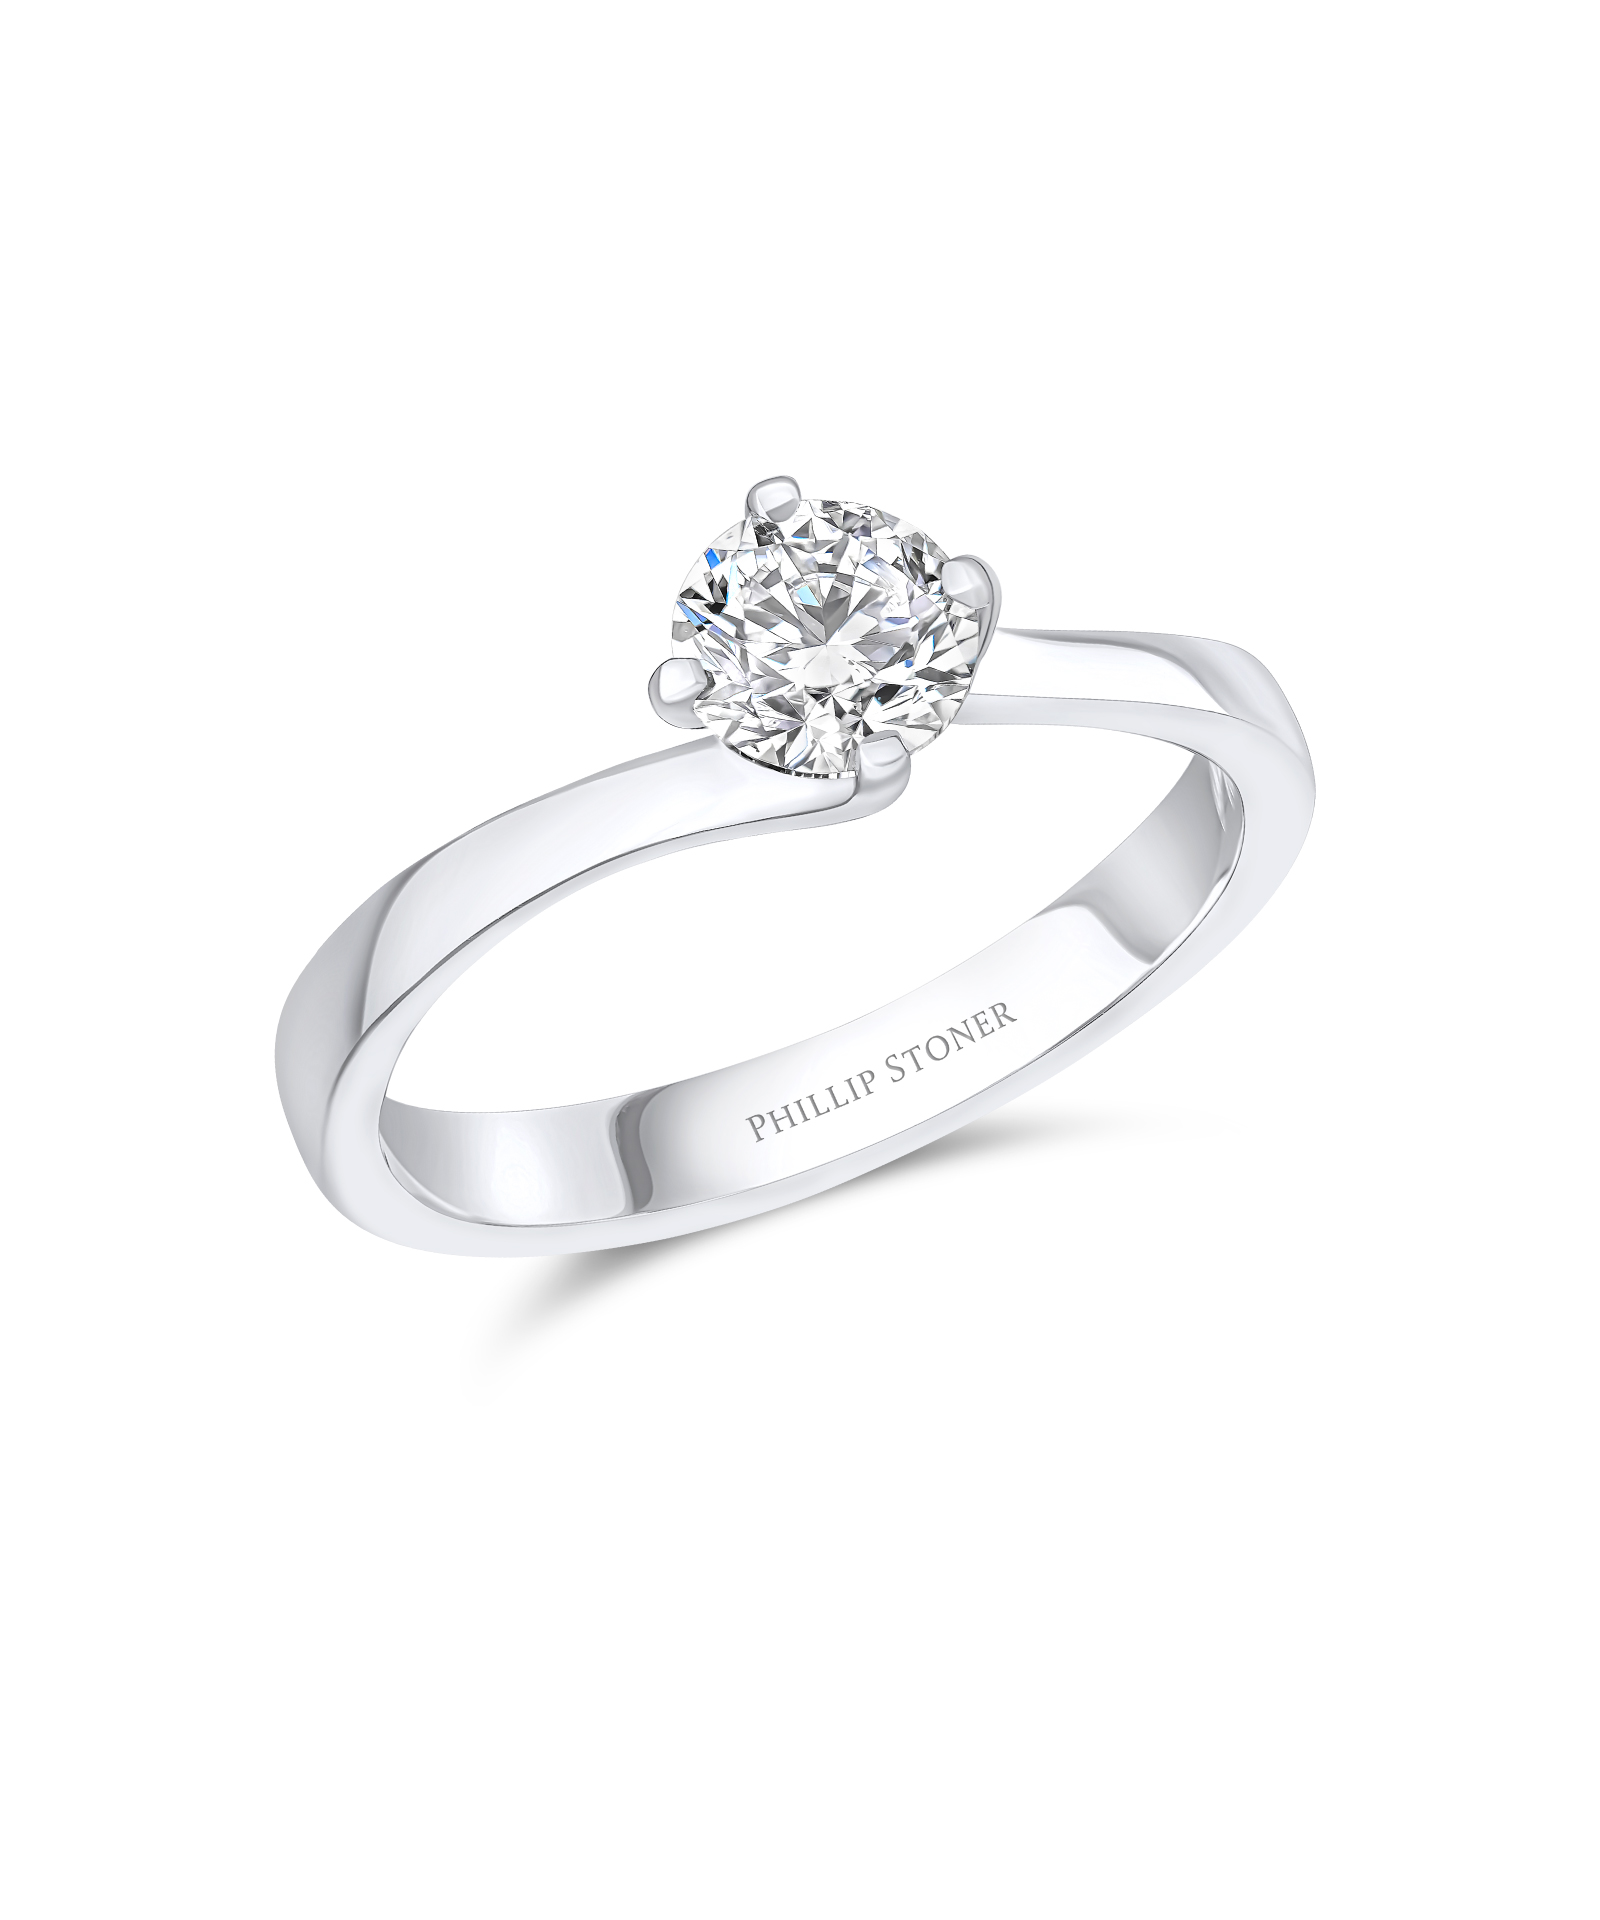 0.70ct Round Brilliant Diamond Platinum Twist Engagement Ring - Phillip Stoner The Jeweller